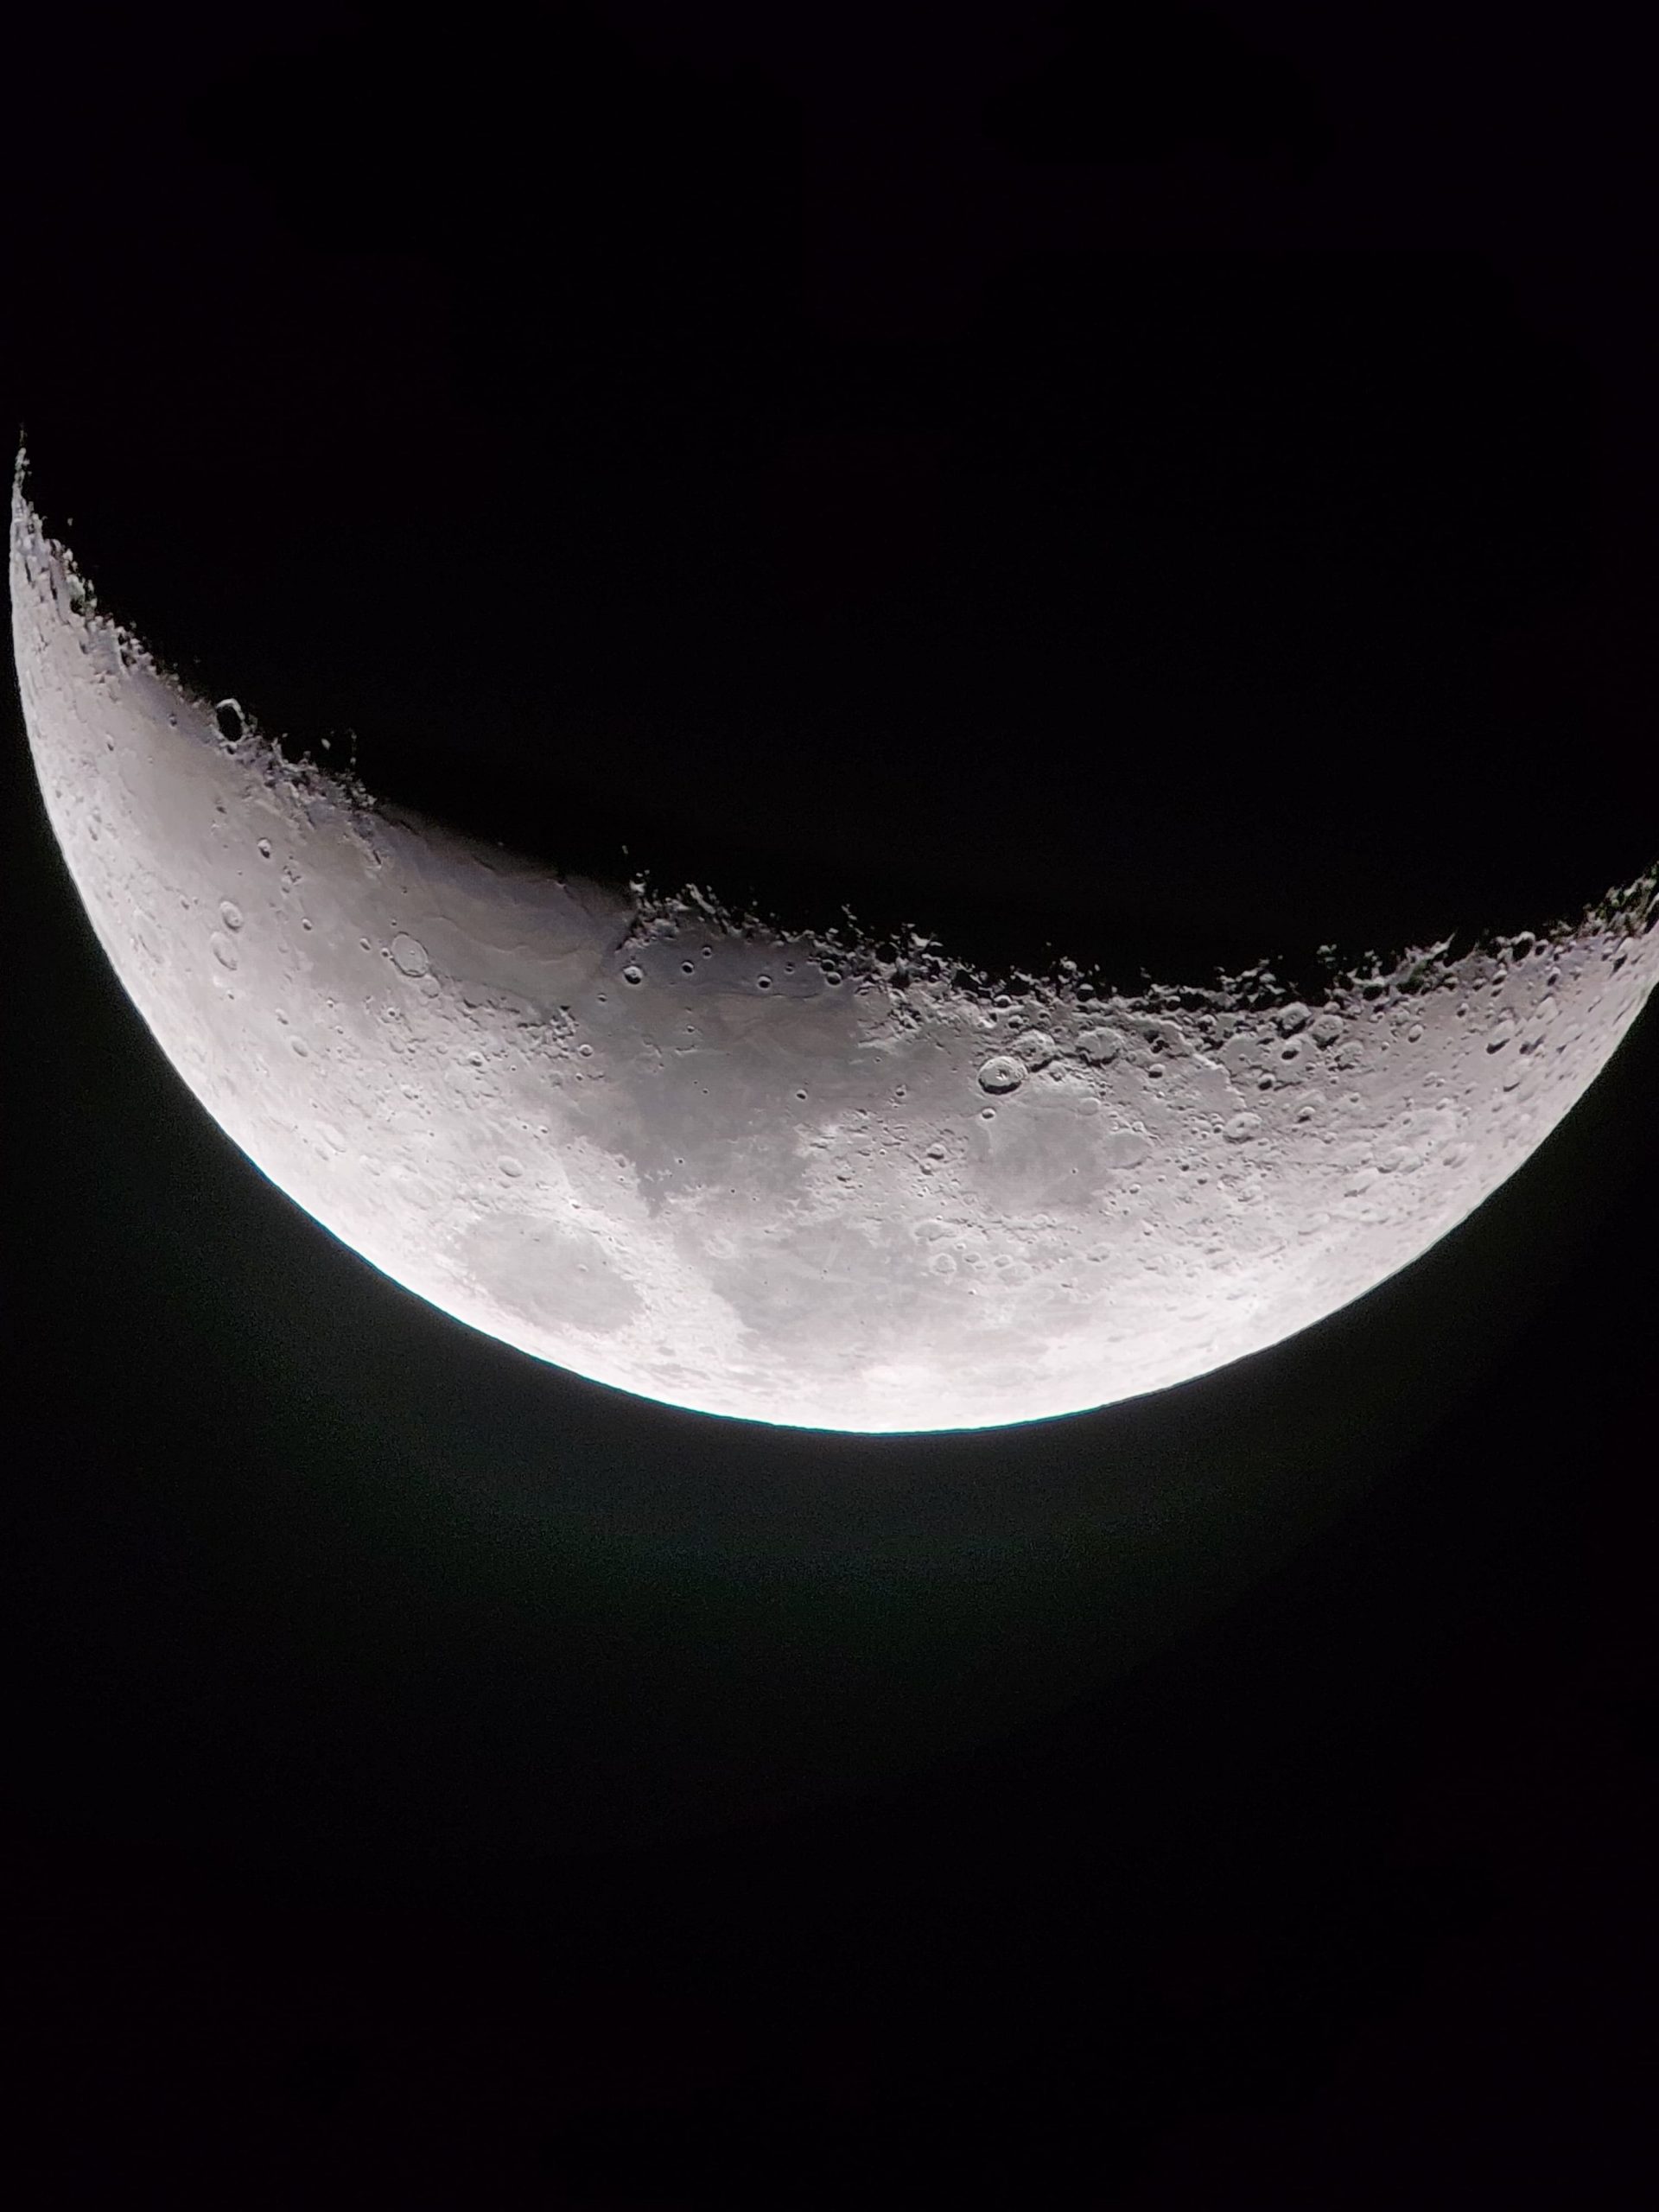 Astronomia no Espaço do Conhecimento: mês de outubro celebra observação da Lua